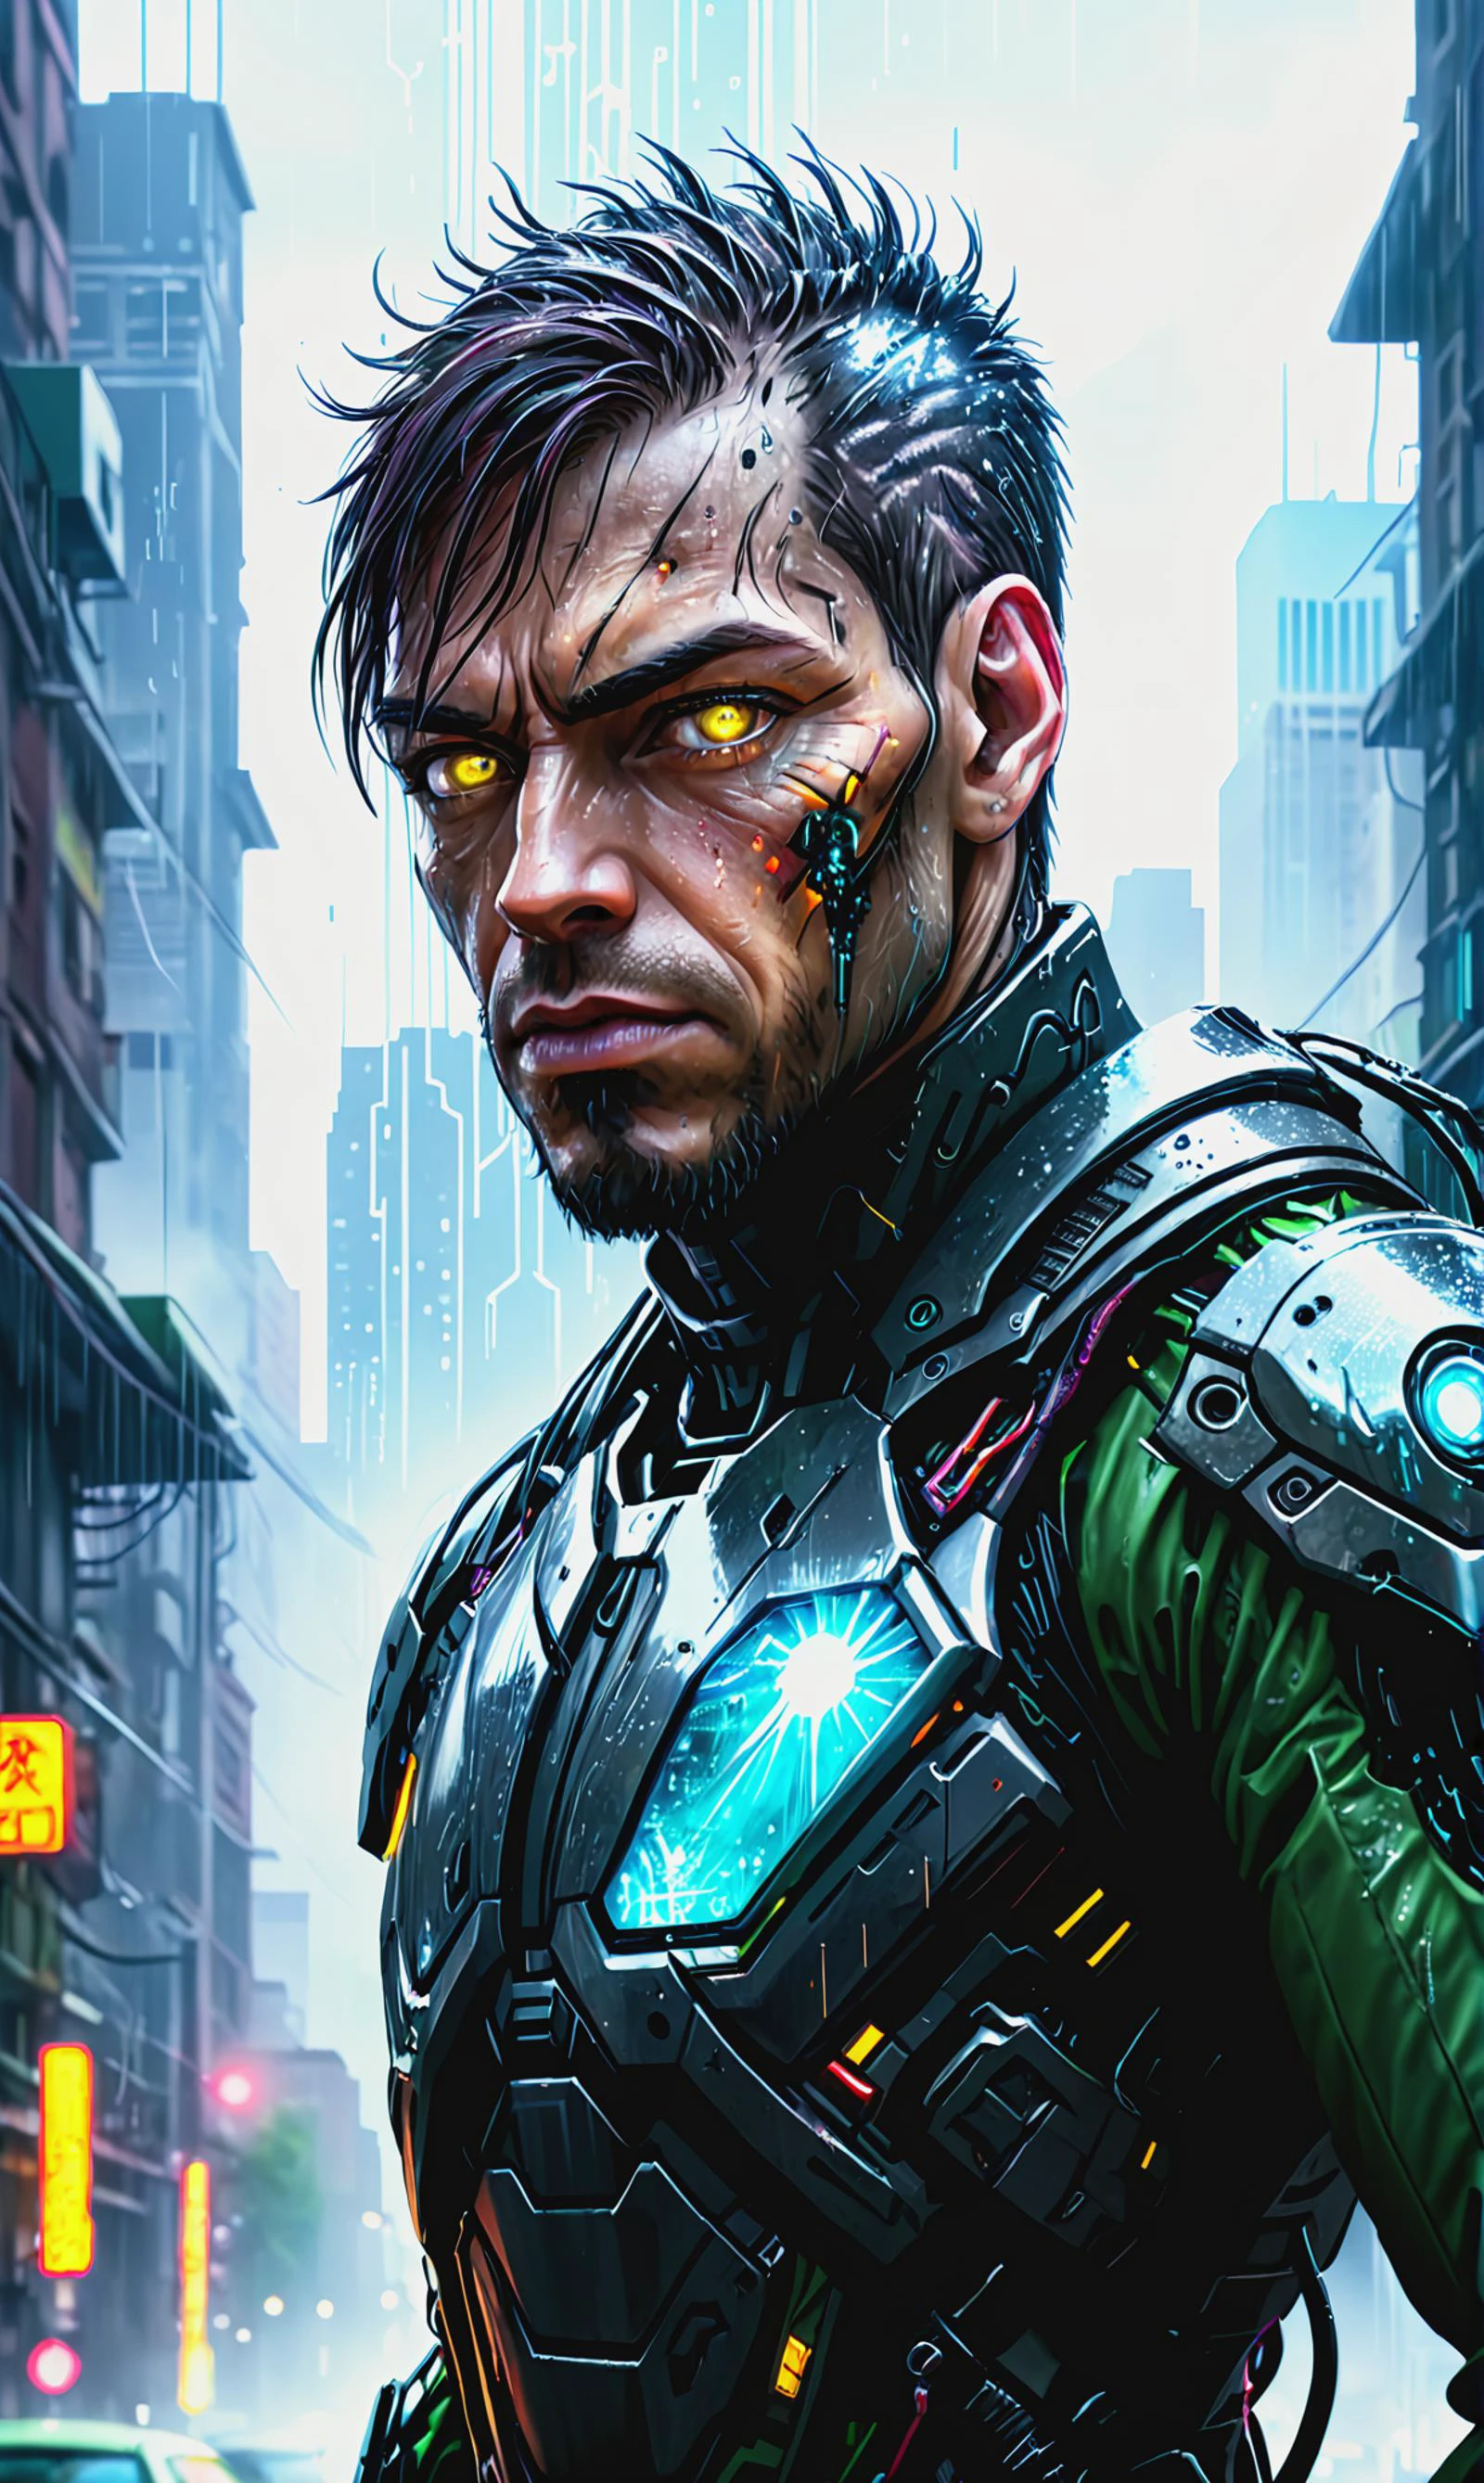 Detailliertes digitales Porträt eines Cyberpunkai-Cyborgs in einer dystopischen Stadt mit ständigem saurem Regen, Linsenreflexion,  Angst